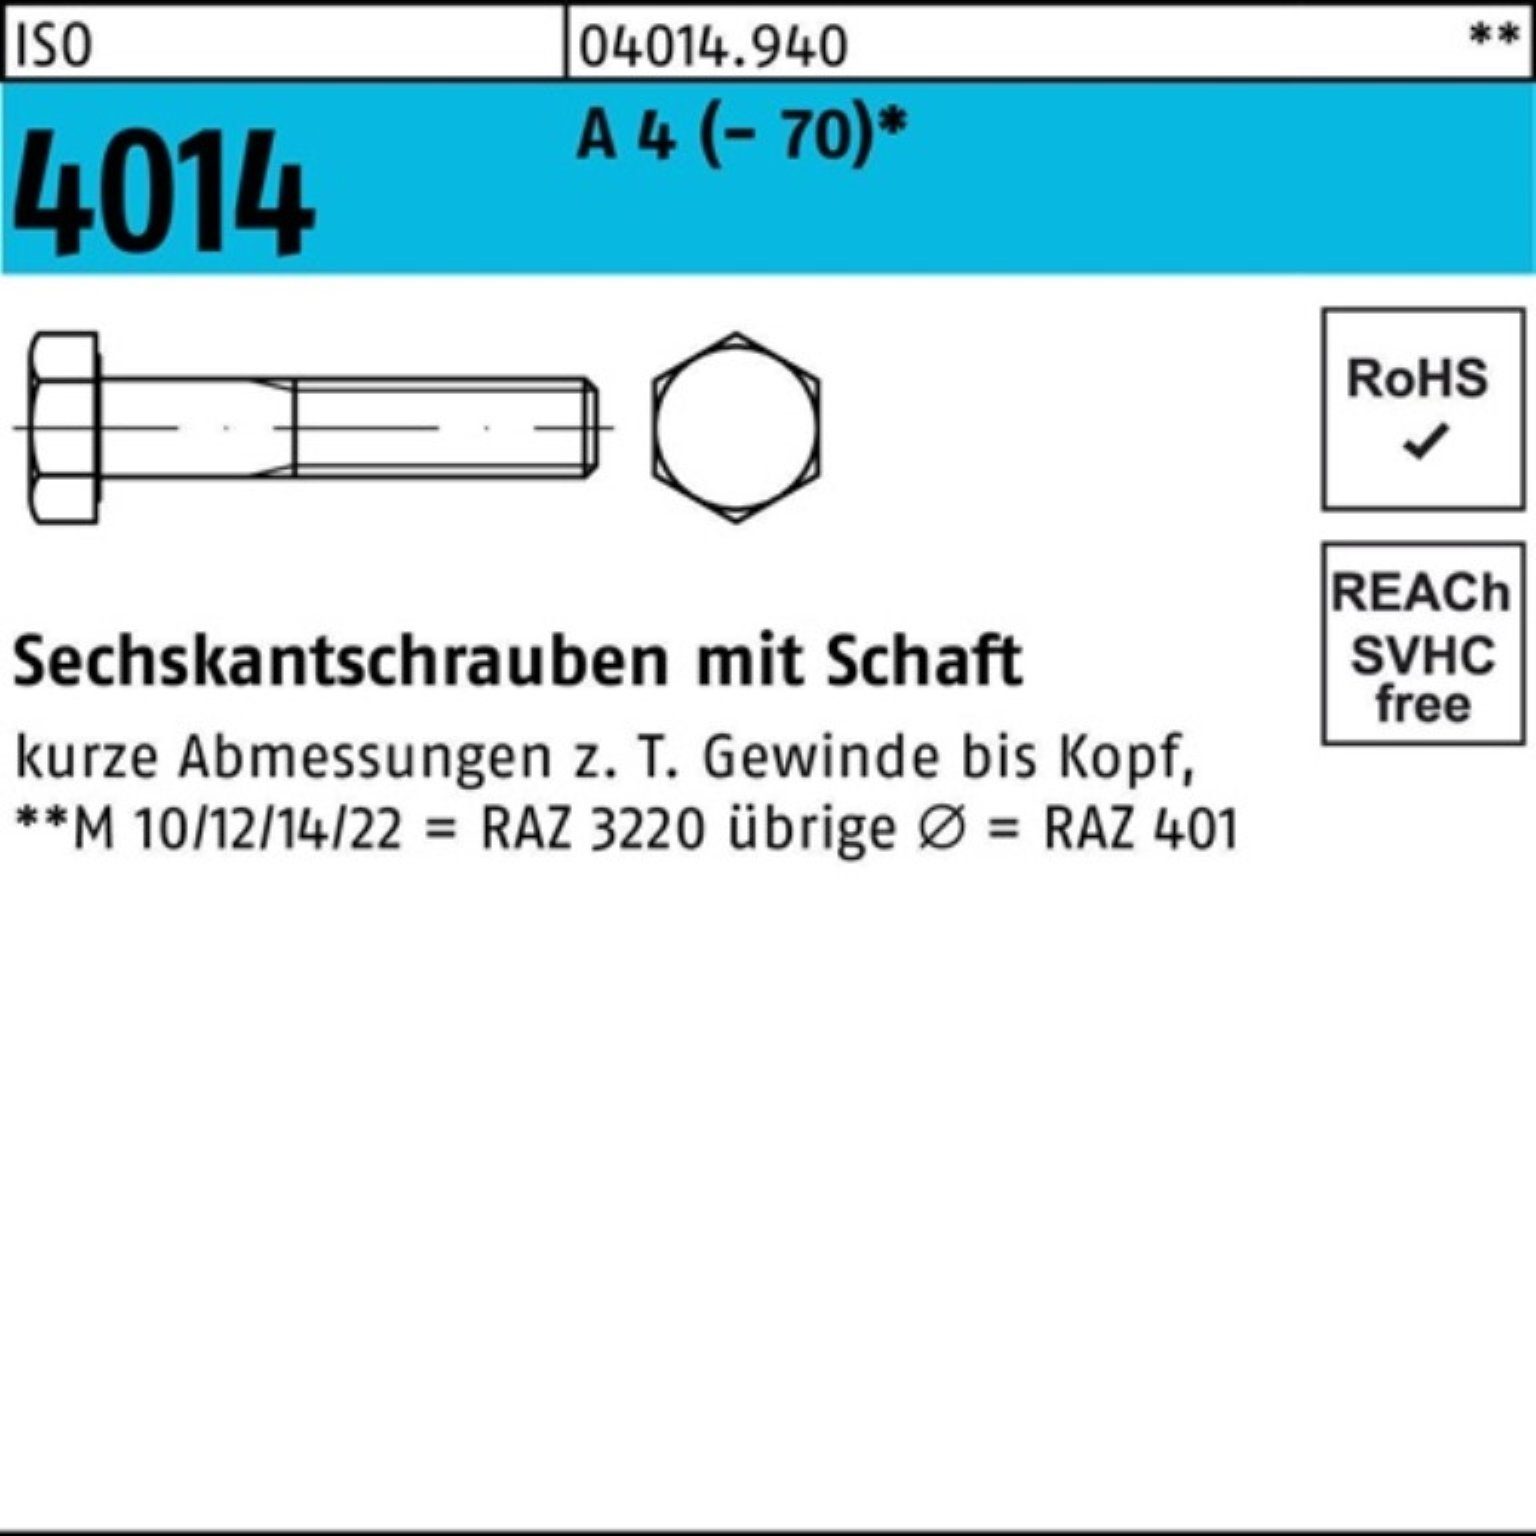 Bufab Sechskantschraube 100er Pack Sechskantschraube ISO 4014 Schaft M18x 100 A 4 (70) 1 St